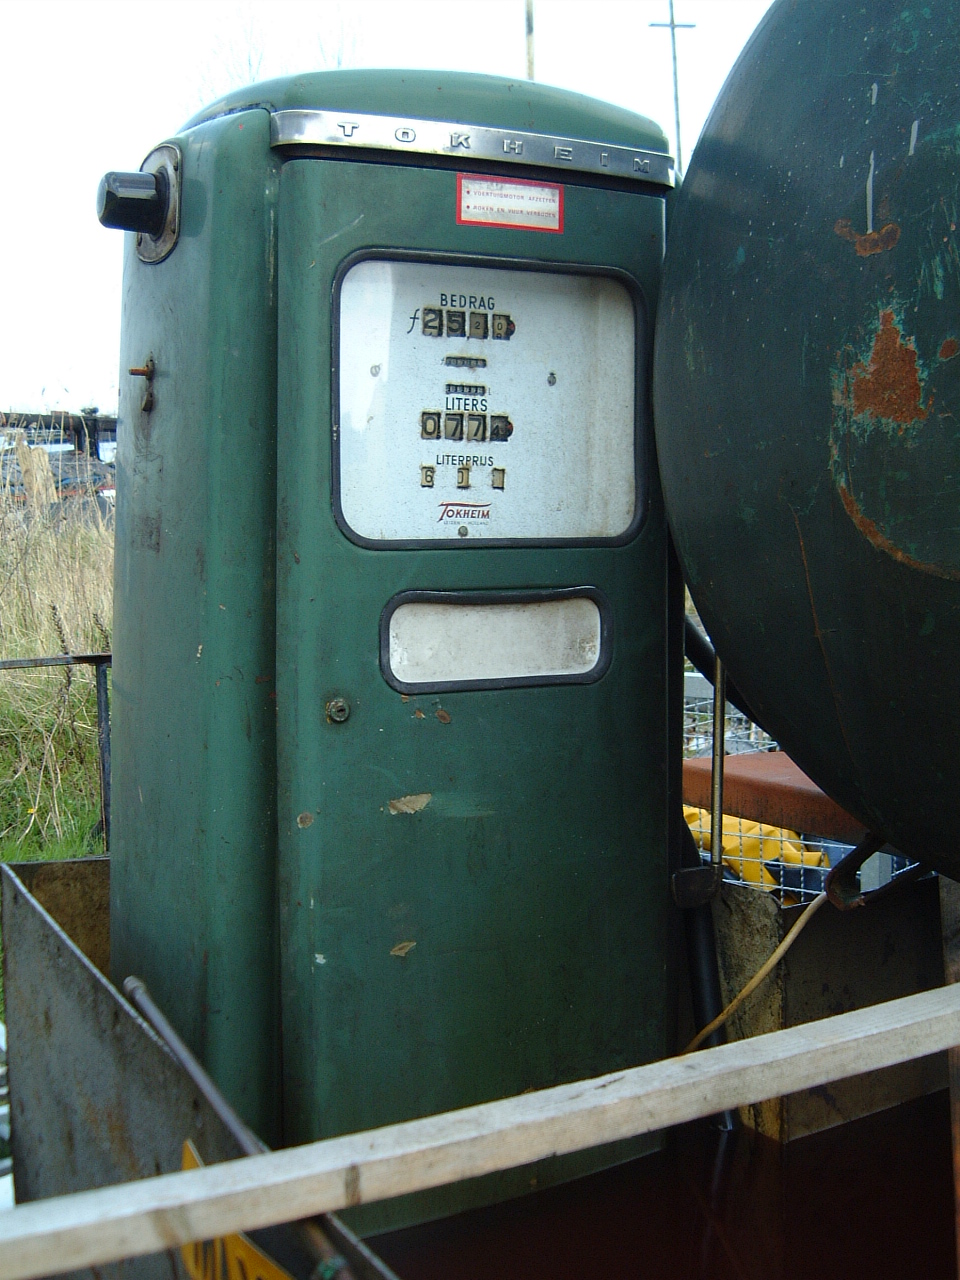 petrol pump gas pump petrolpump gaspump old antique rubbish liters bedrag meters amount